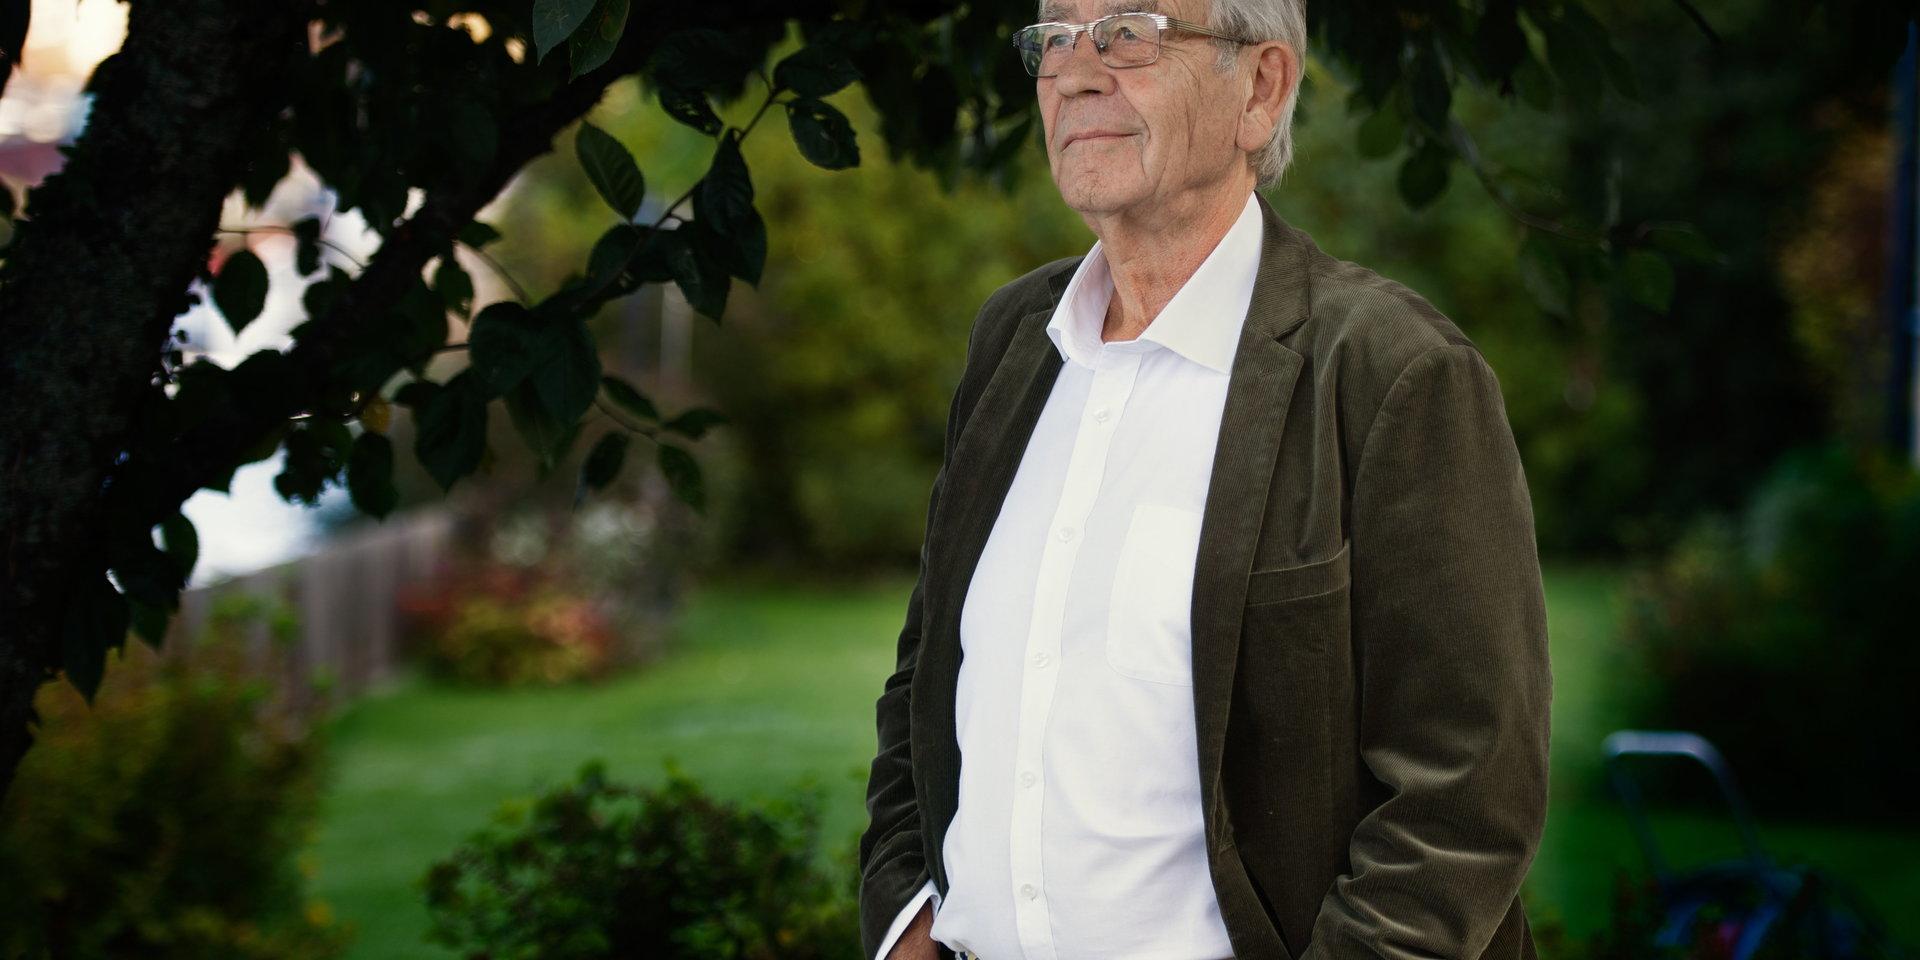 Peter Althin är en av Sveriges mest kända och framgångsrika advokater. Nu fyller han 80 år.